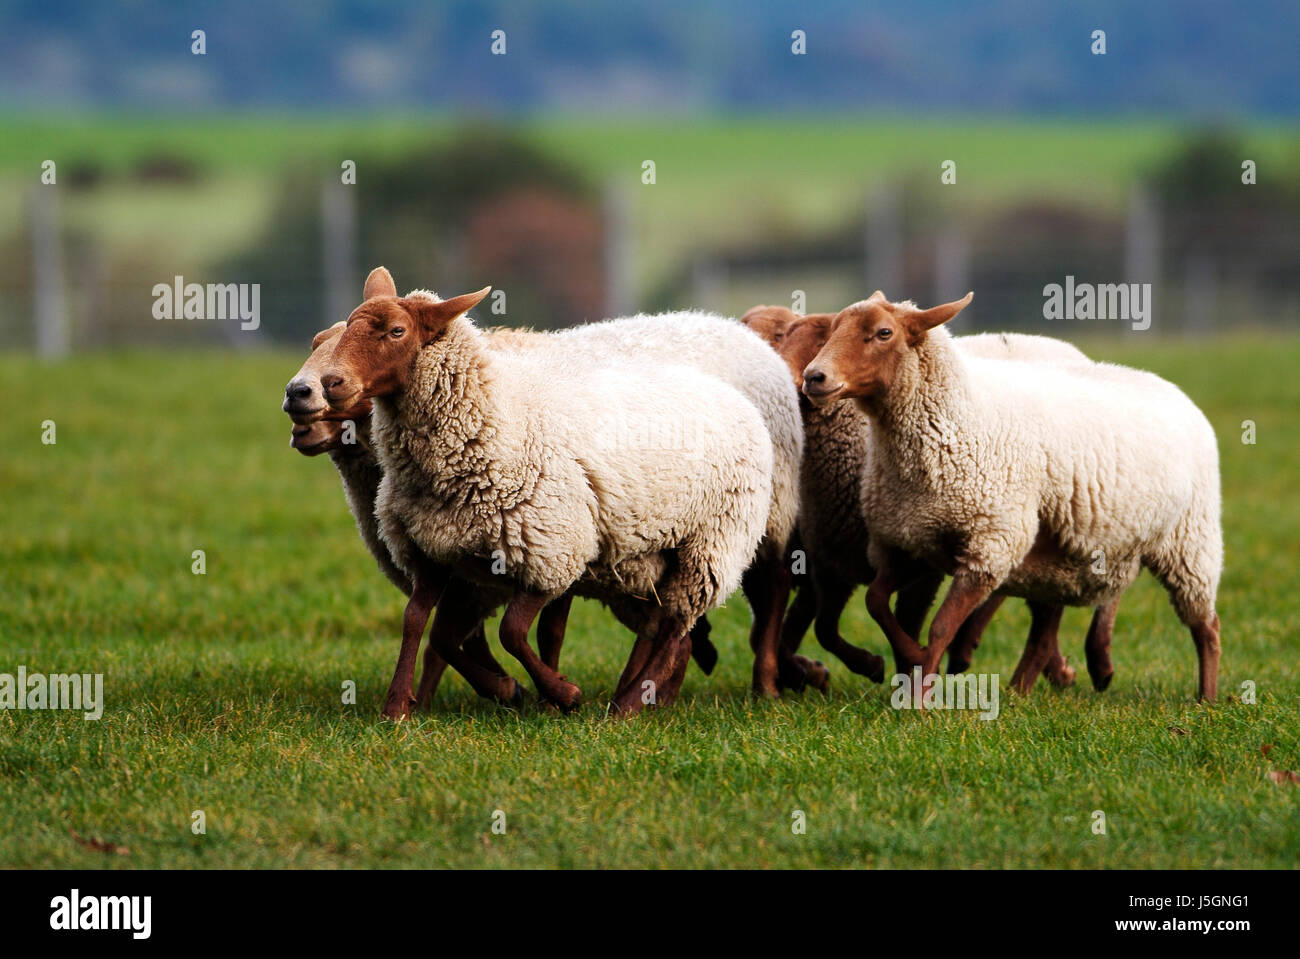 animal mammal animals sheep wool farm animal sheep (pl.) gregarious animal Stock Photo